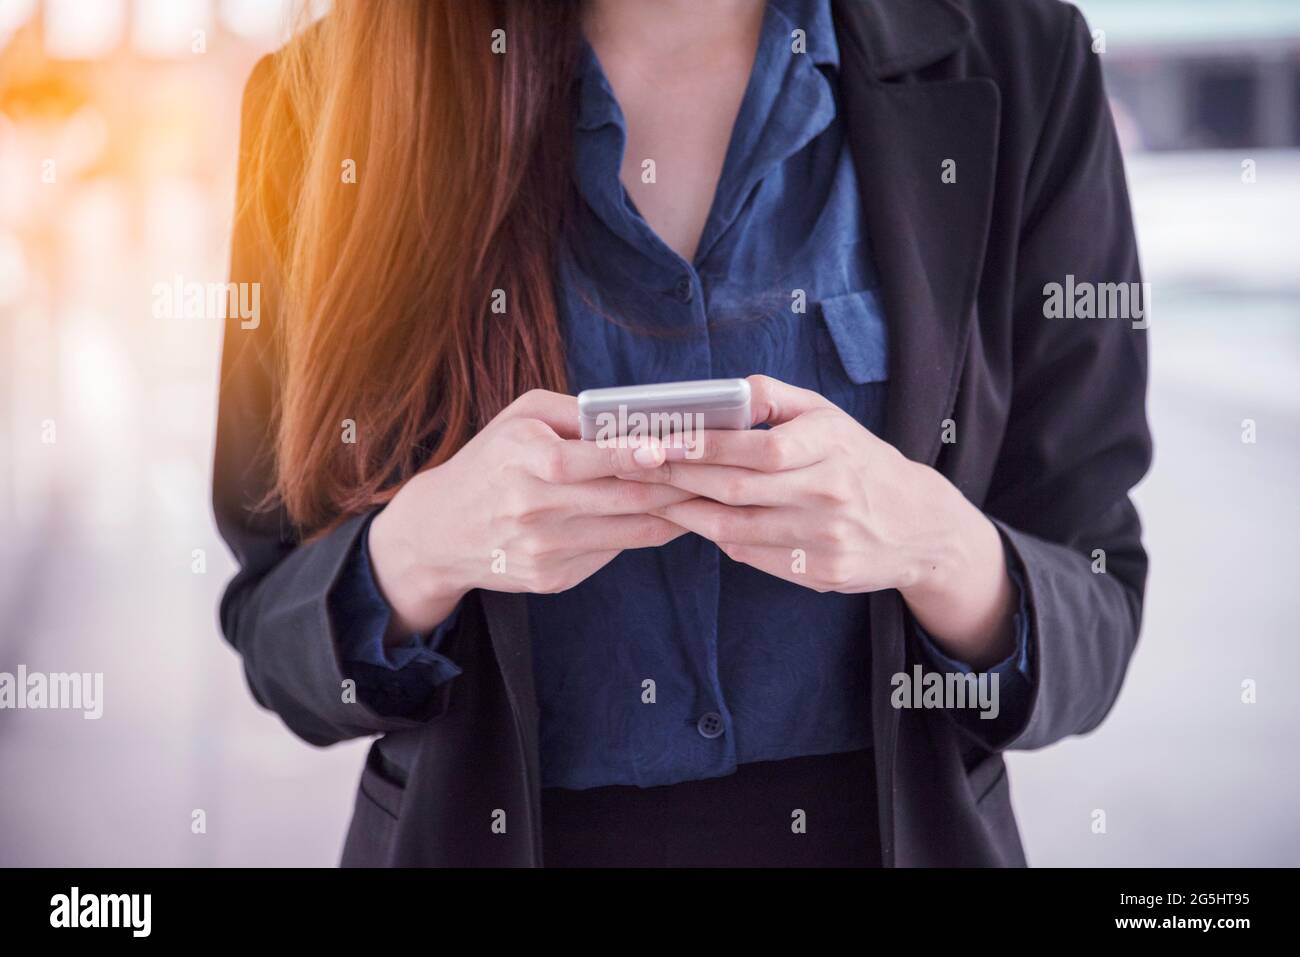 sullo smartphone. Faccia sorridente della donna asiatica che tiene il cellulare con e-commerce Shopping online sito web che legge articolo online, blog e vlog. Foto Stock